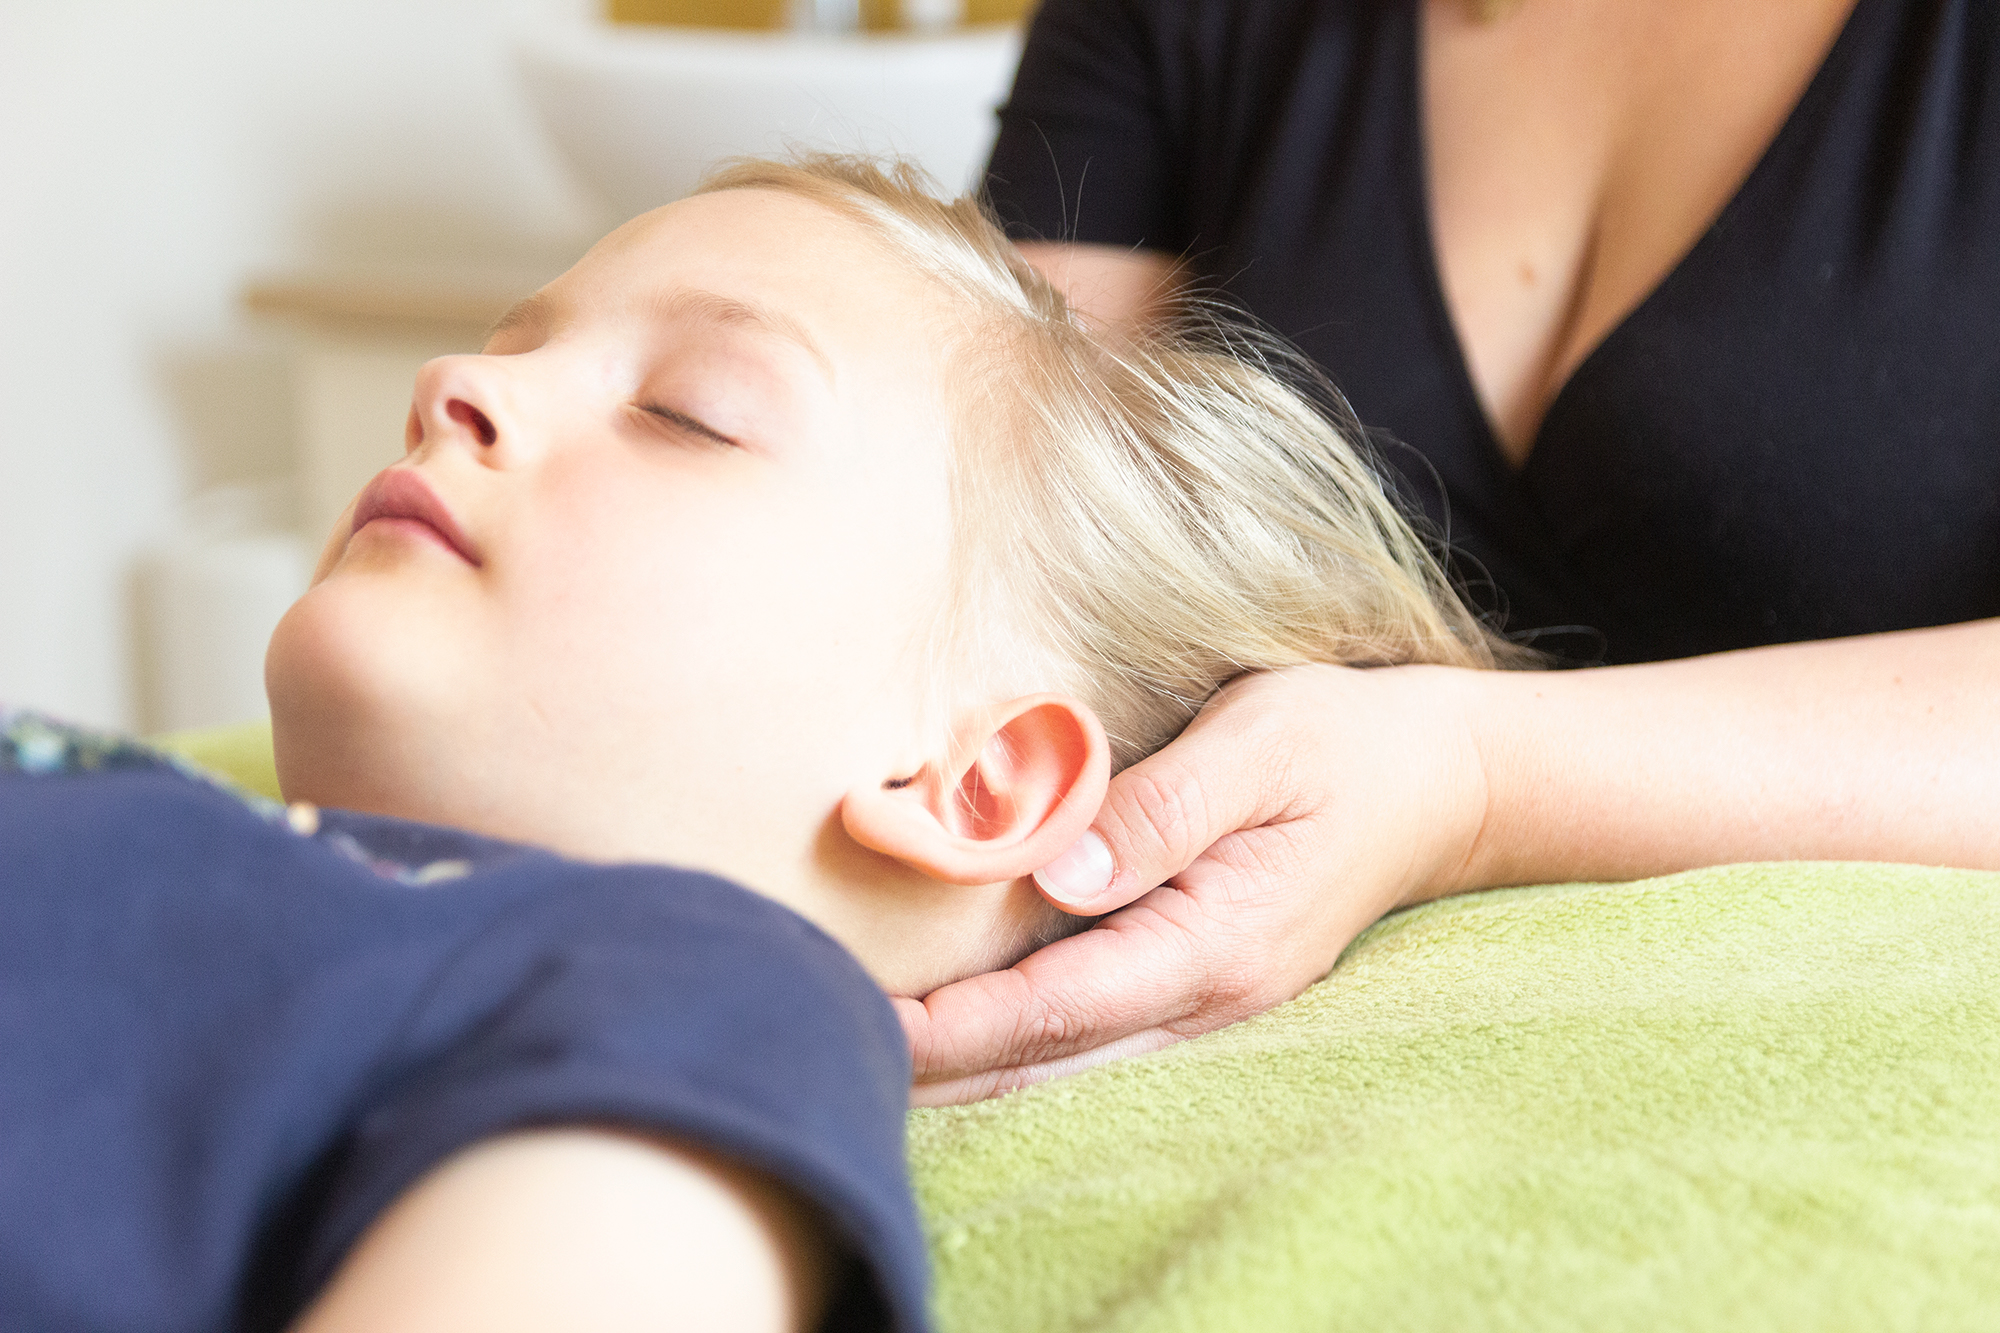 Cranio Sacral Balancing Anwenung bei einem Kind Behandlung und Therapien Wohlfühlmomente Praxis für energetische Anwendungen